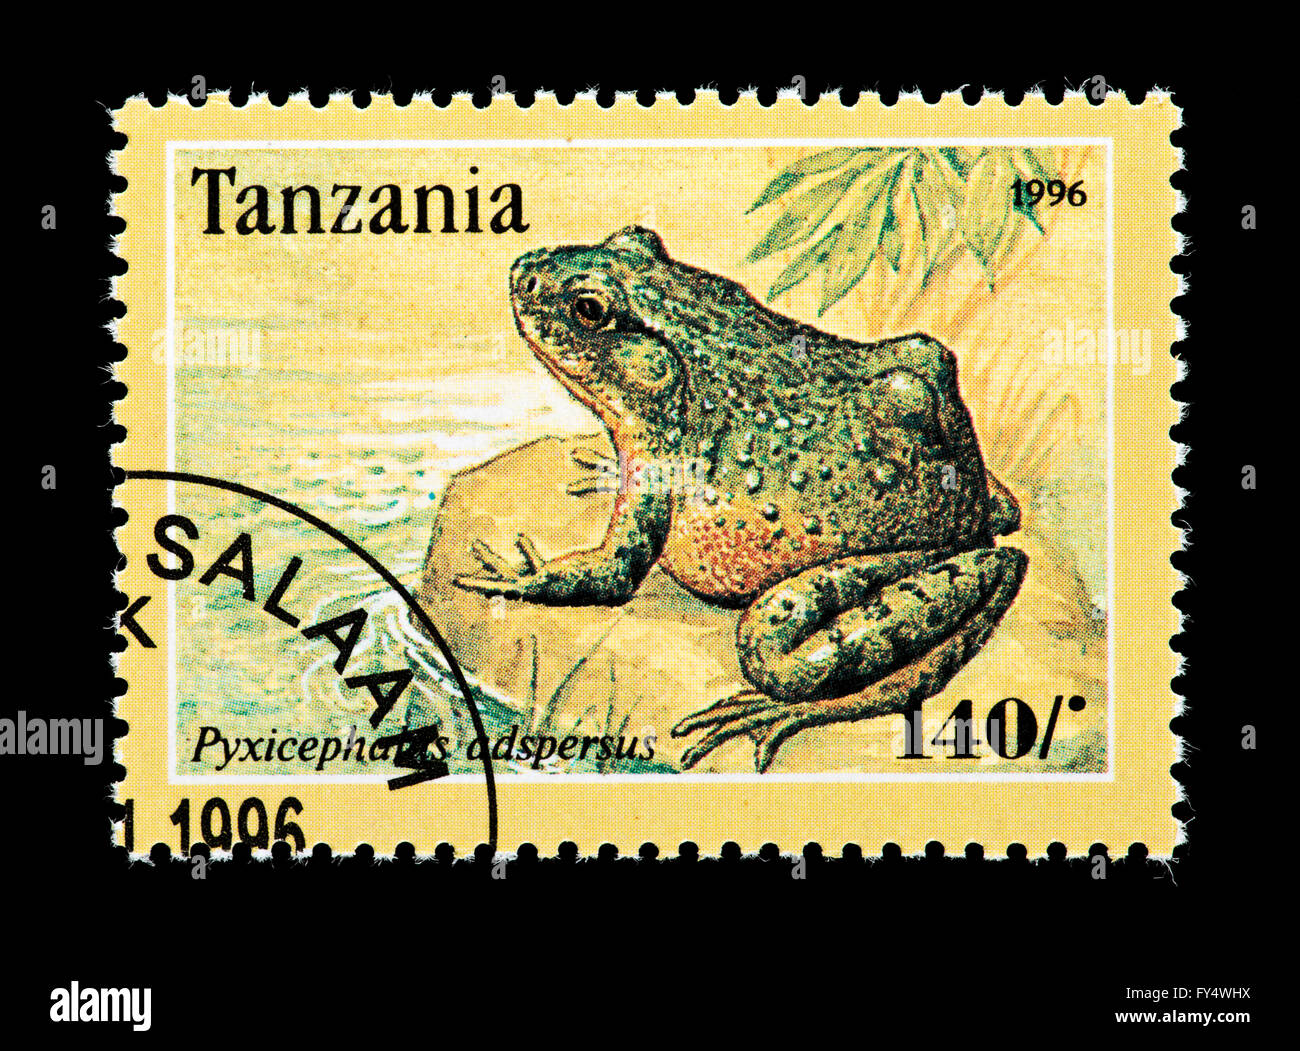 Timbre de Tanzanie représentant une grenouille africaine (Pyxicephalus adspersus) Banque D'Images